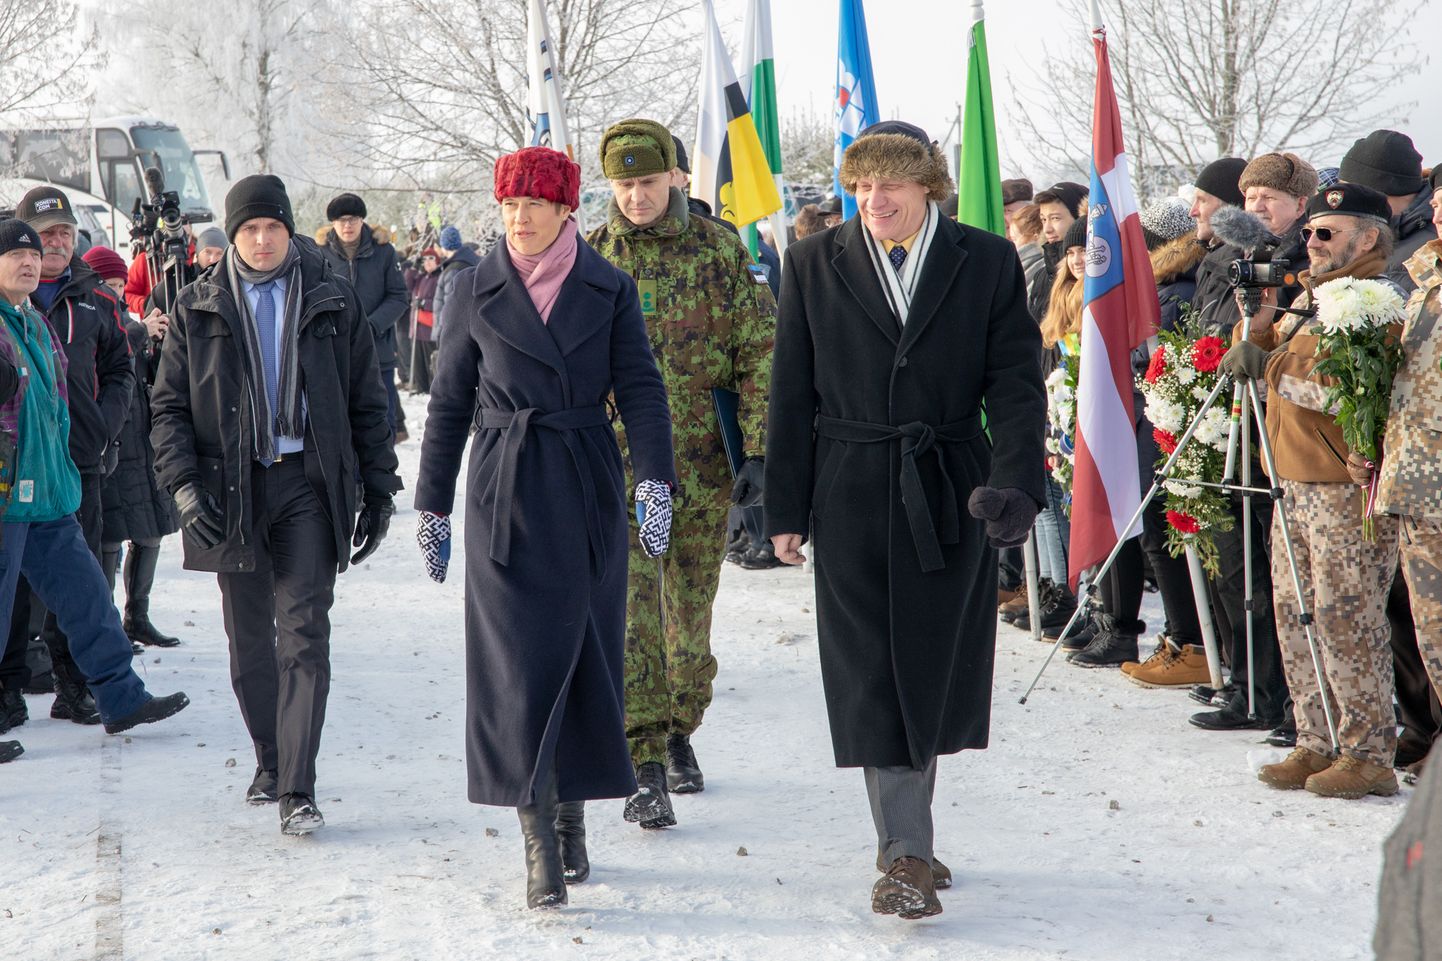 "Wabaduse teekonna" viimases peatuspunktis tähistati Valga vabastamise ja Paju lahingu  100. aastapäeva. Pidulikust päevast võttis osa ka president Kaljulaid.